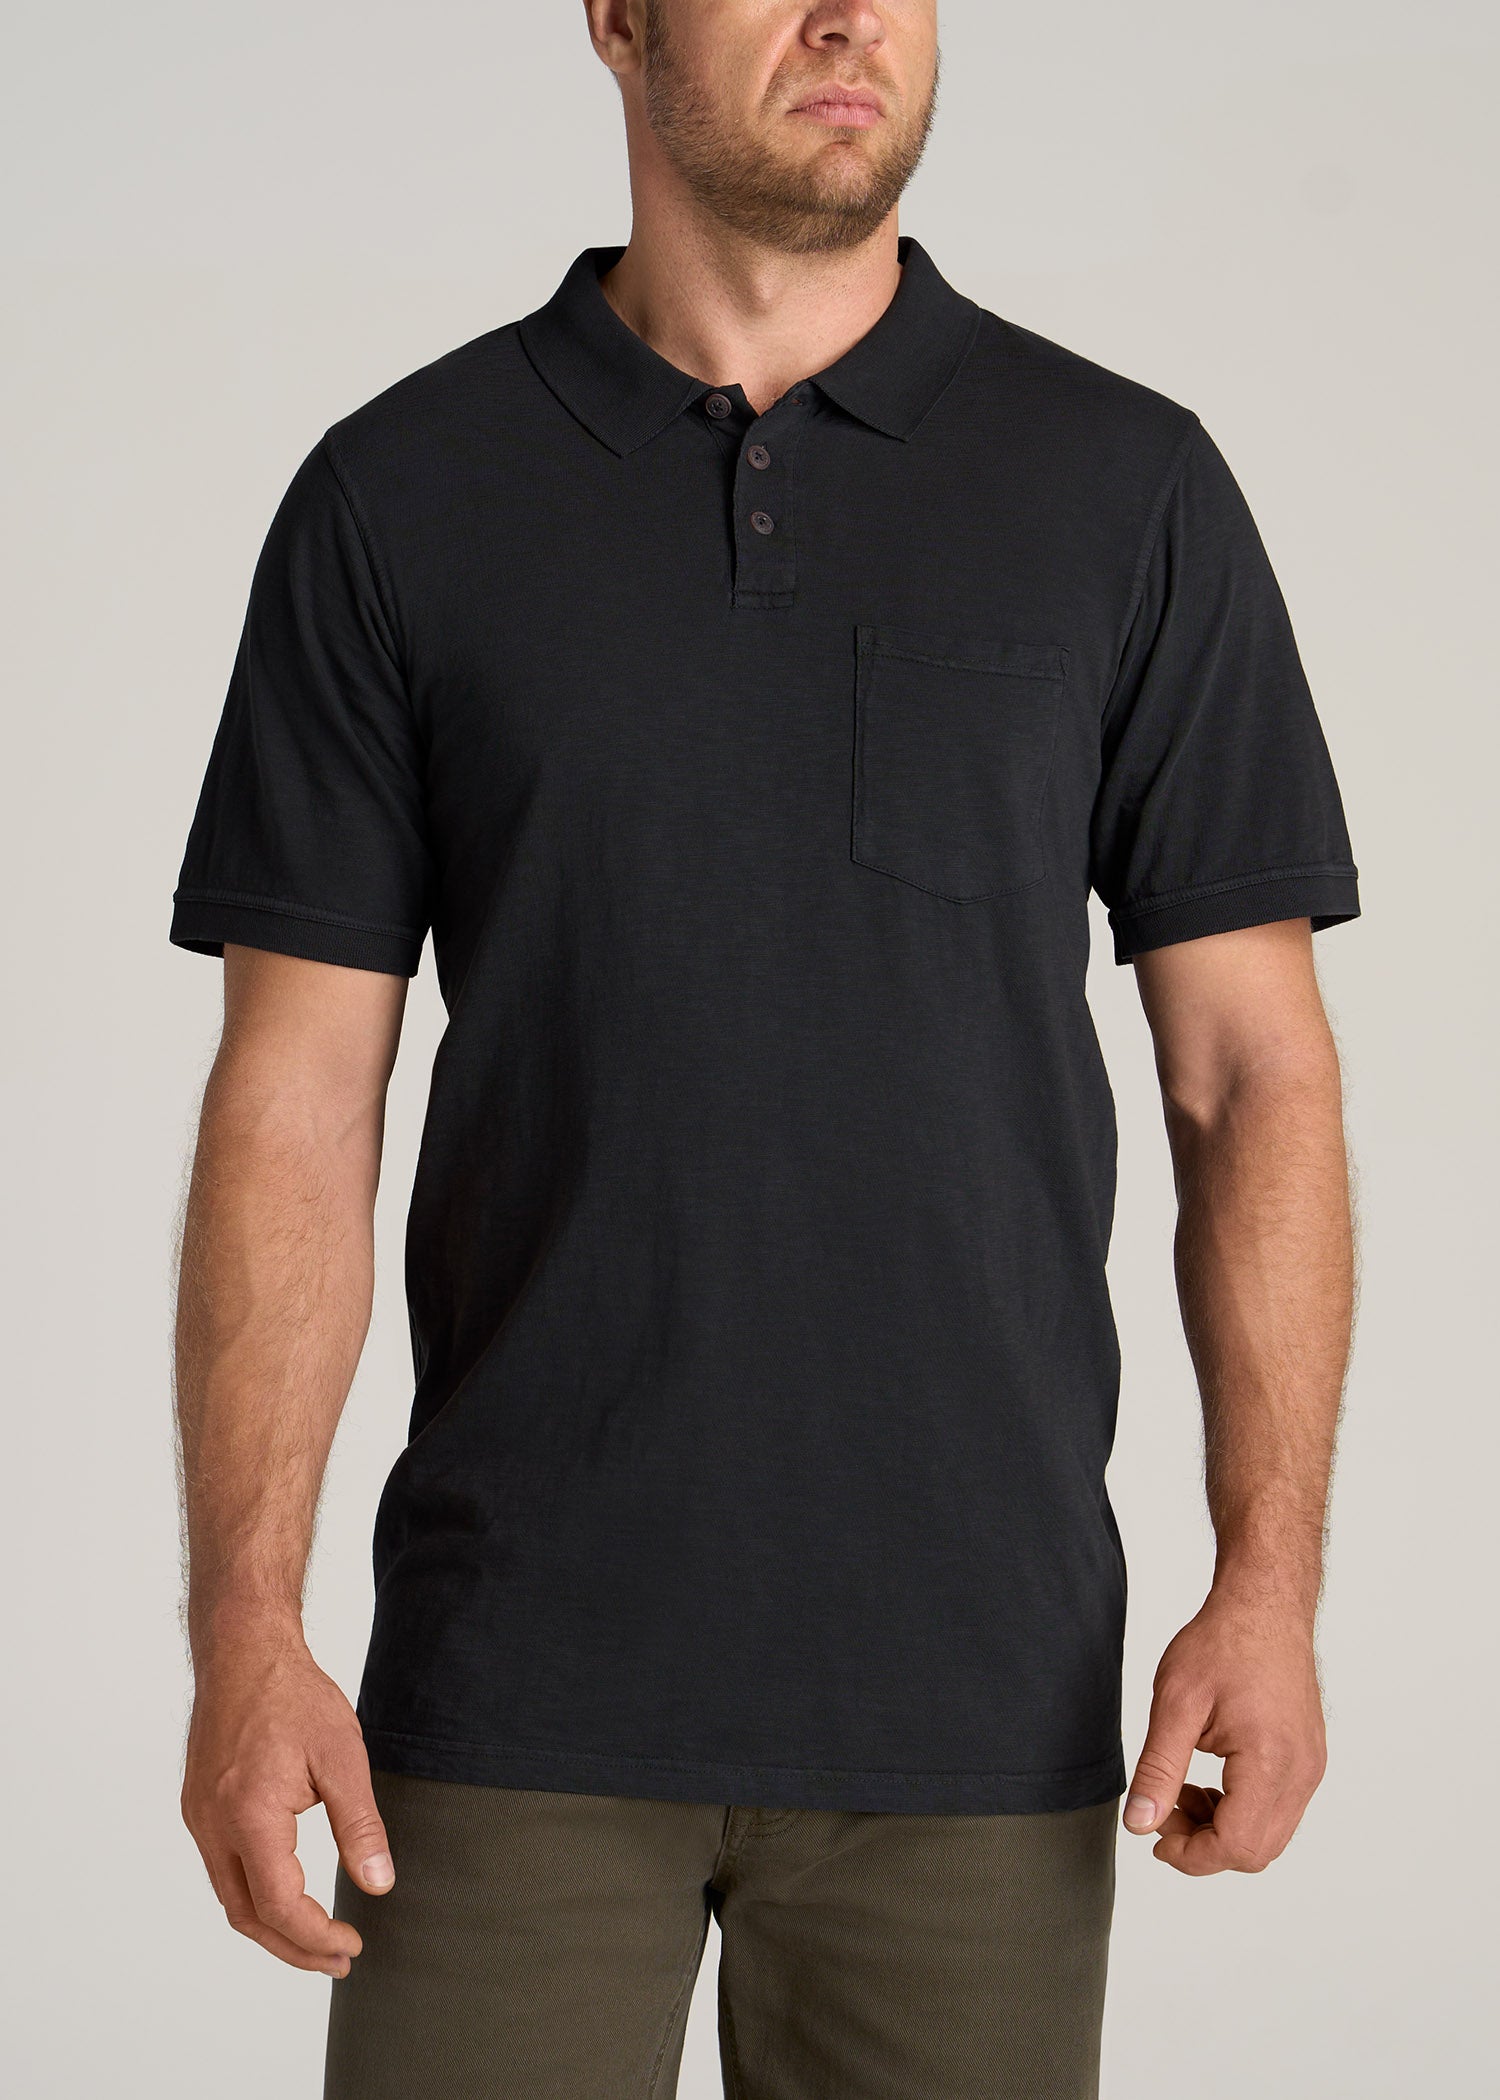     American-Tall-Men-LJ-Slub-Pocket-Polo-Shirt-Vintage-Black-front